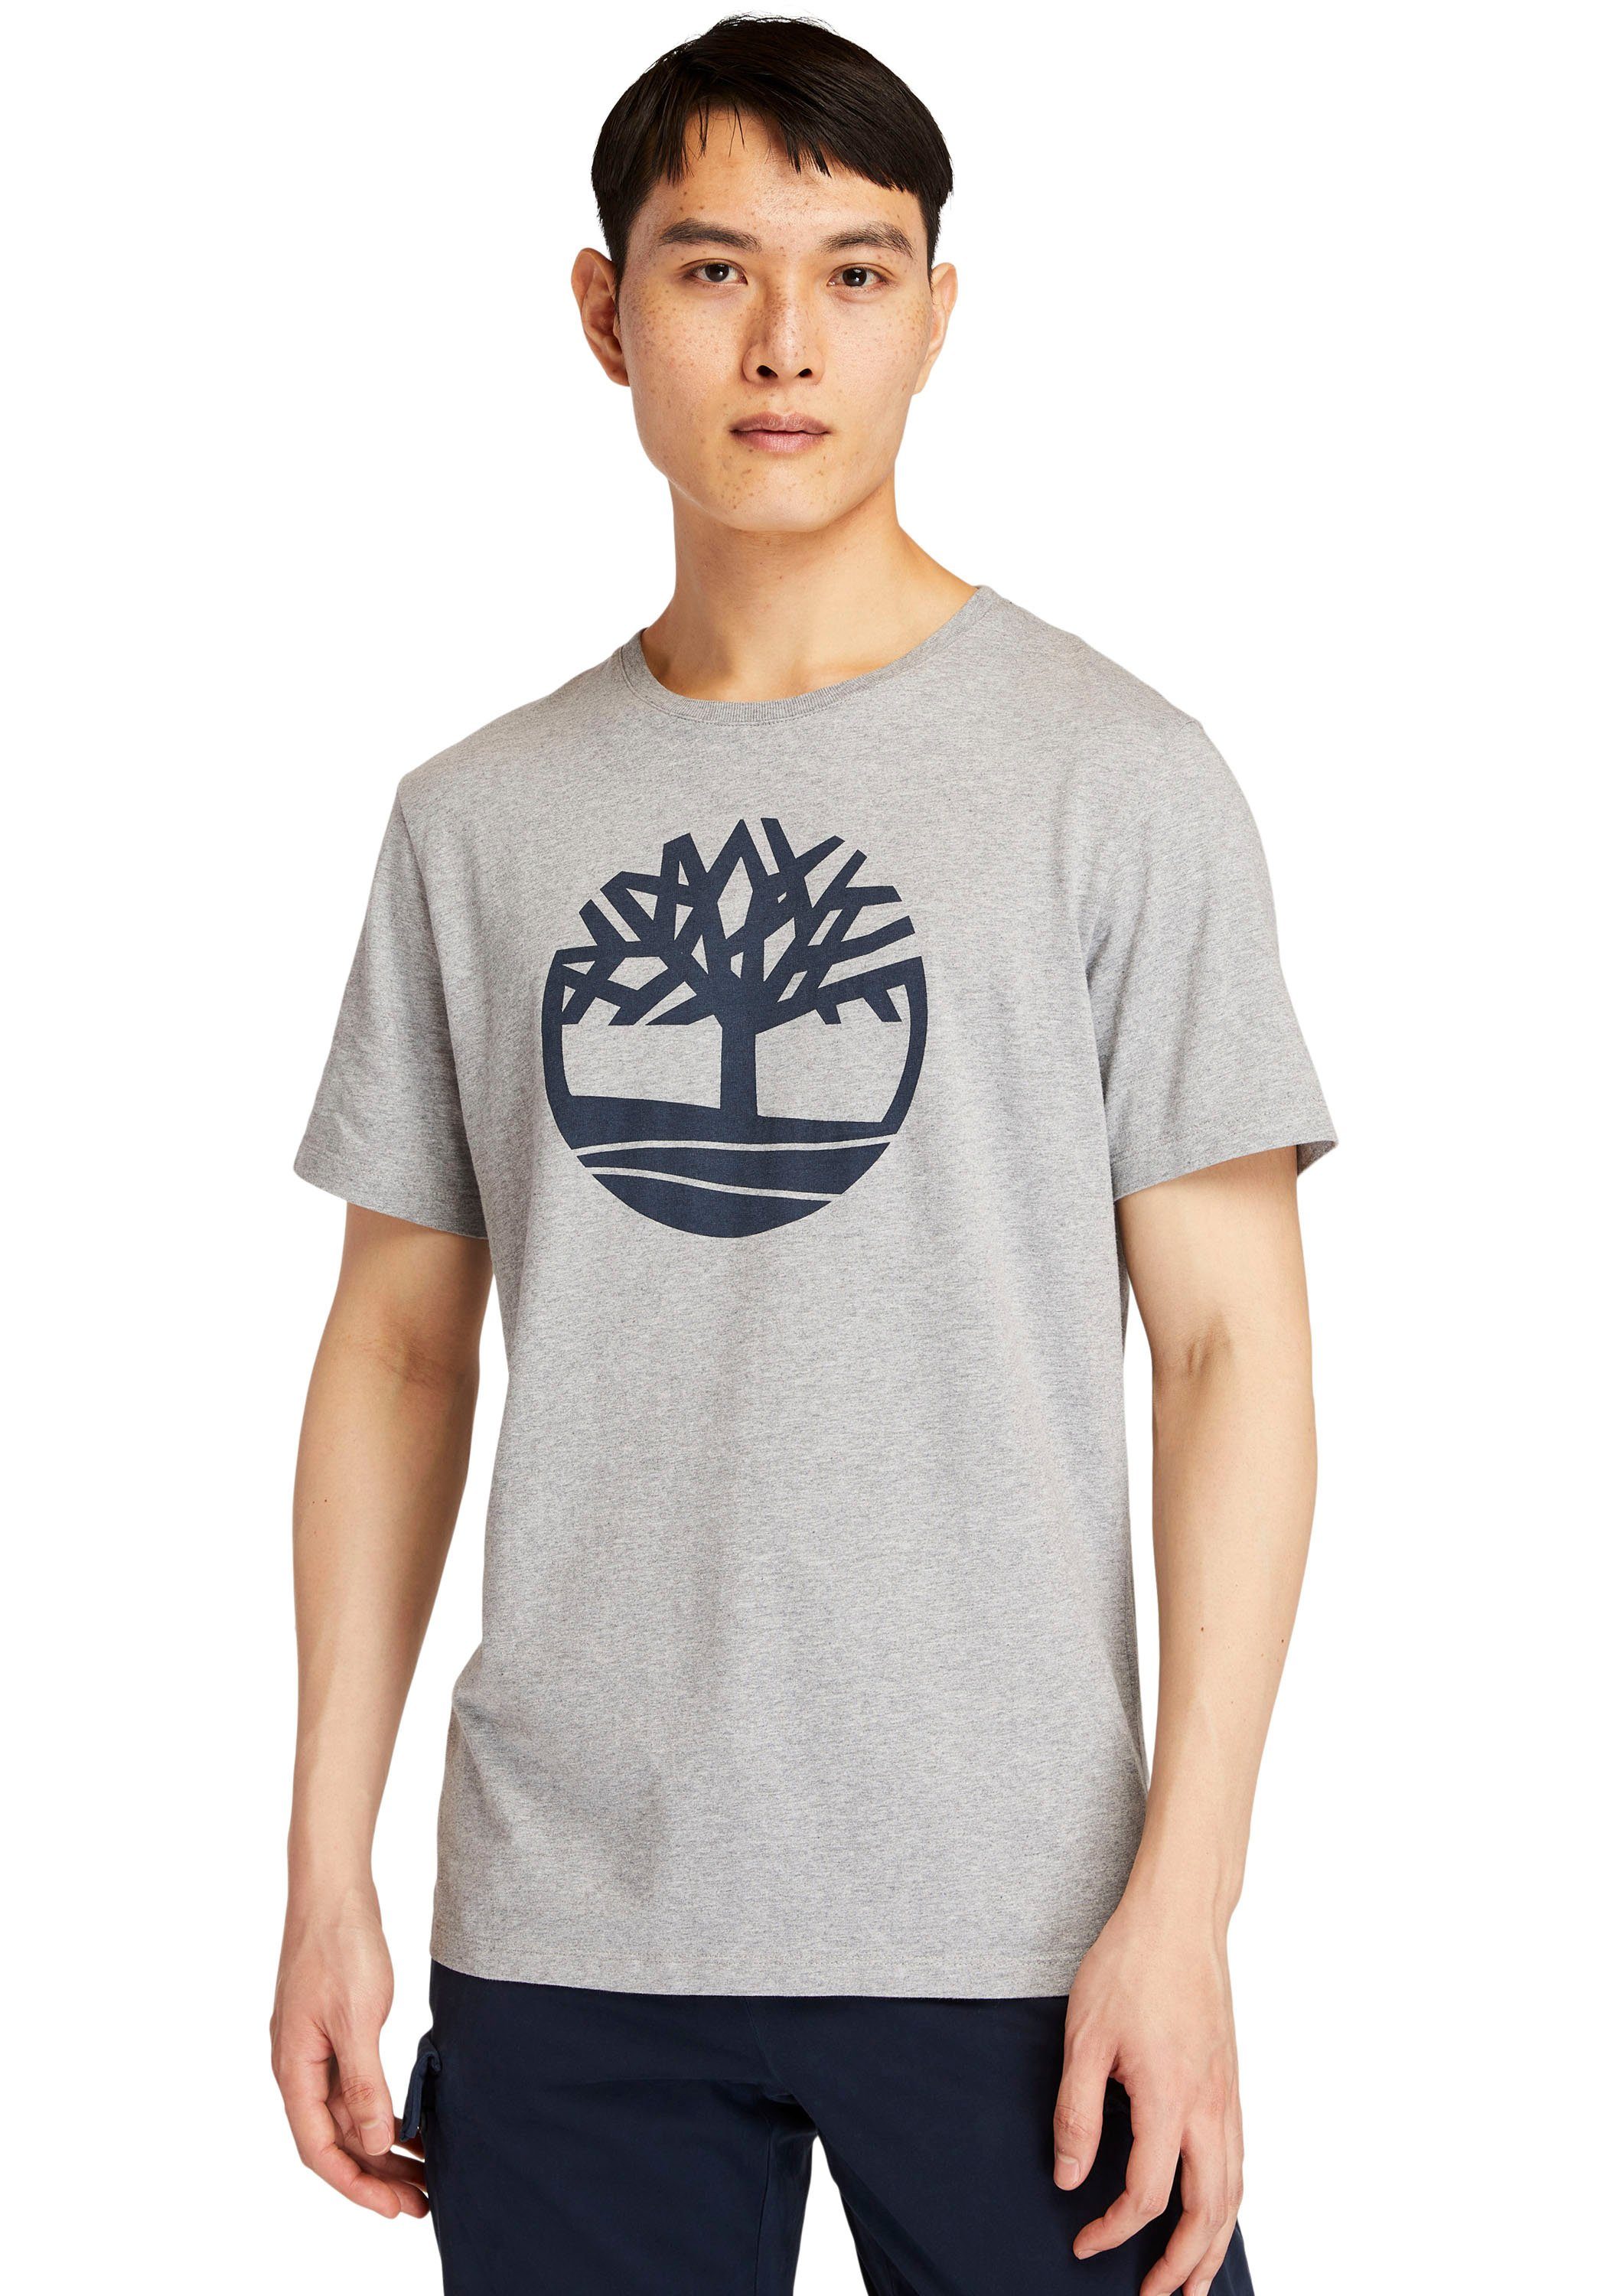 Timberland Kennebec River meliert grau Tree T-Shirt